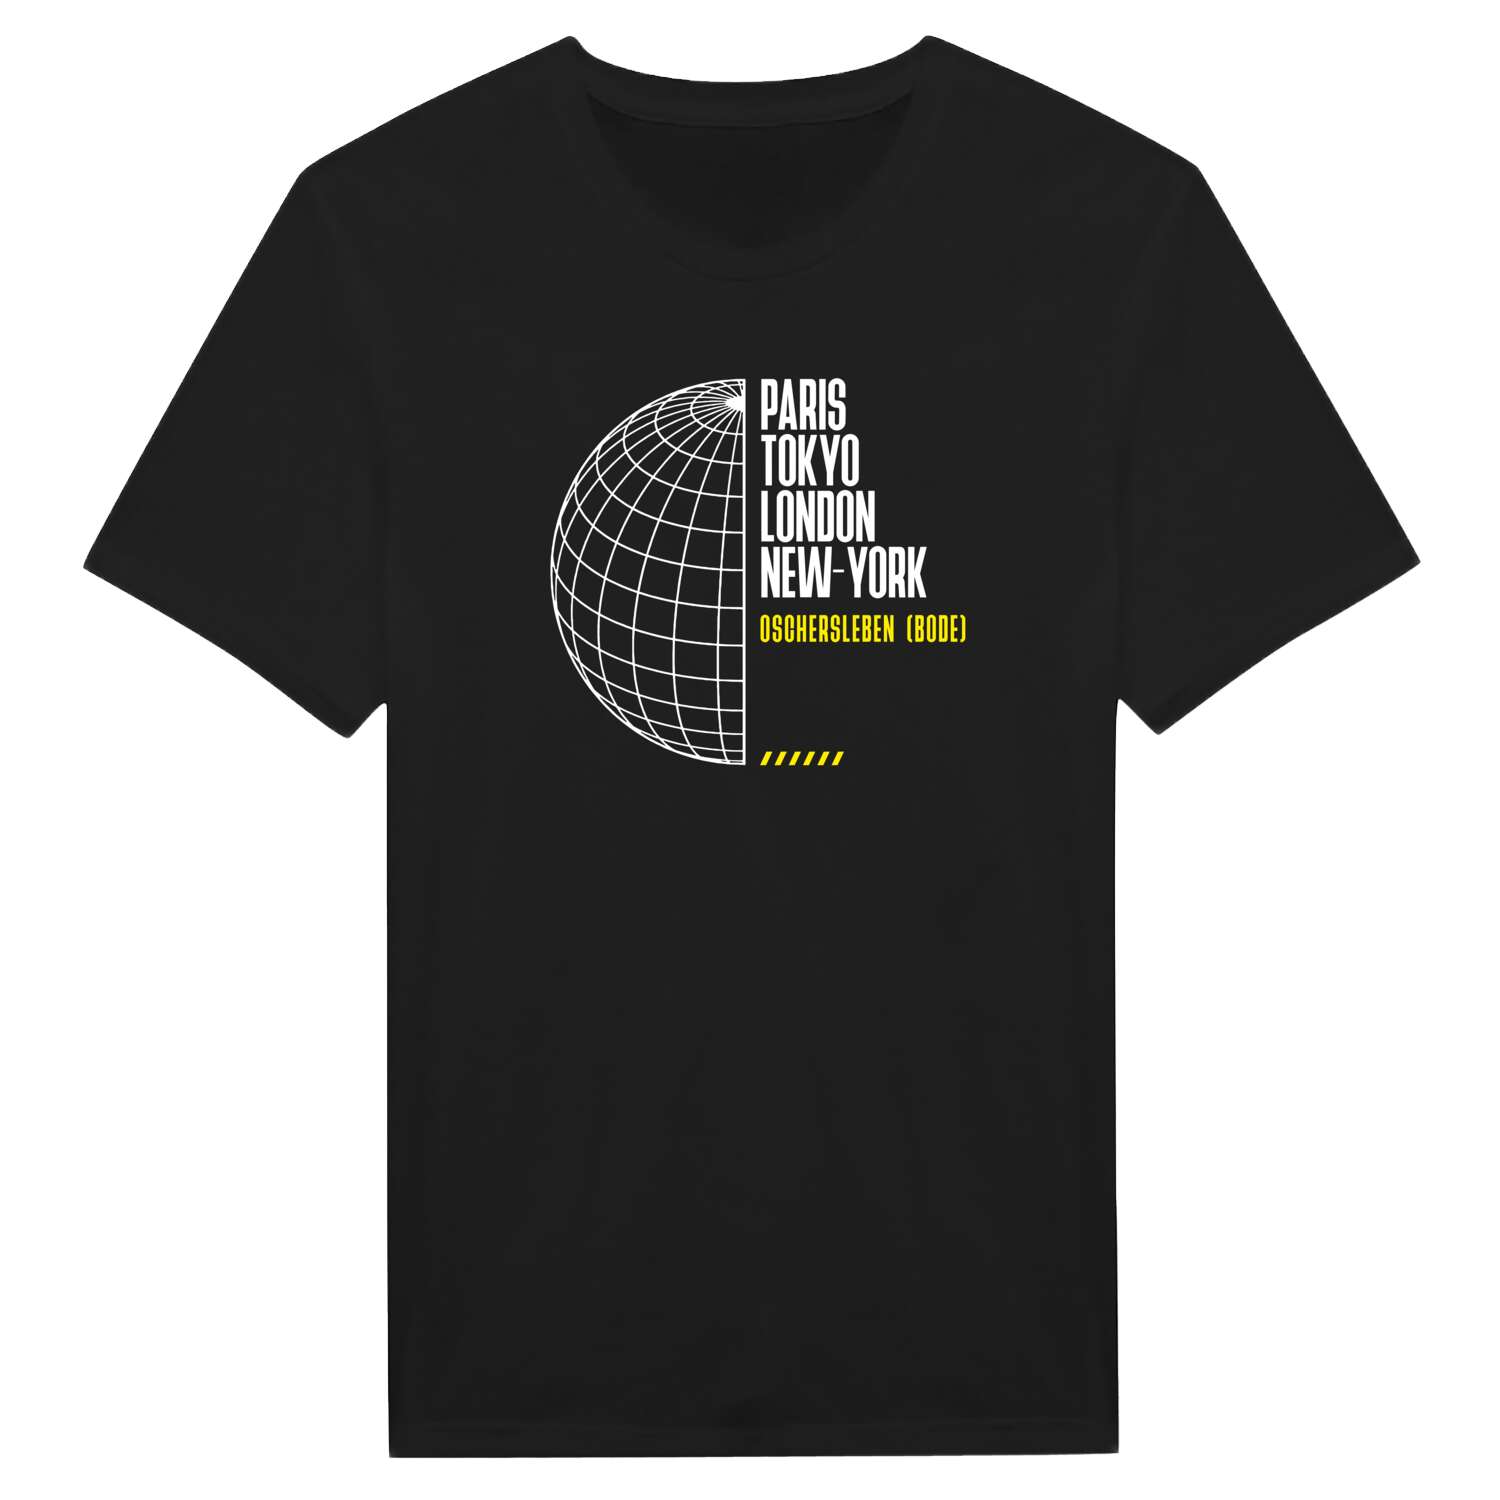 Oschersleben (Bode) T-Shirt »Paris Tokyo London«